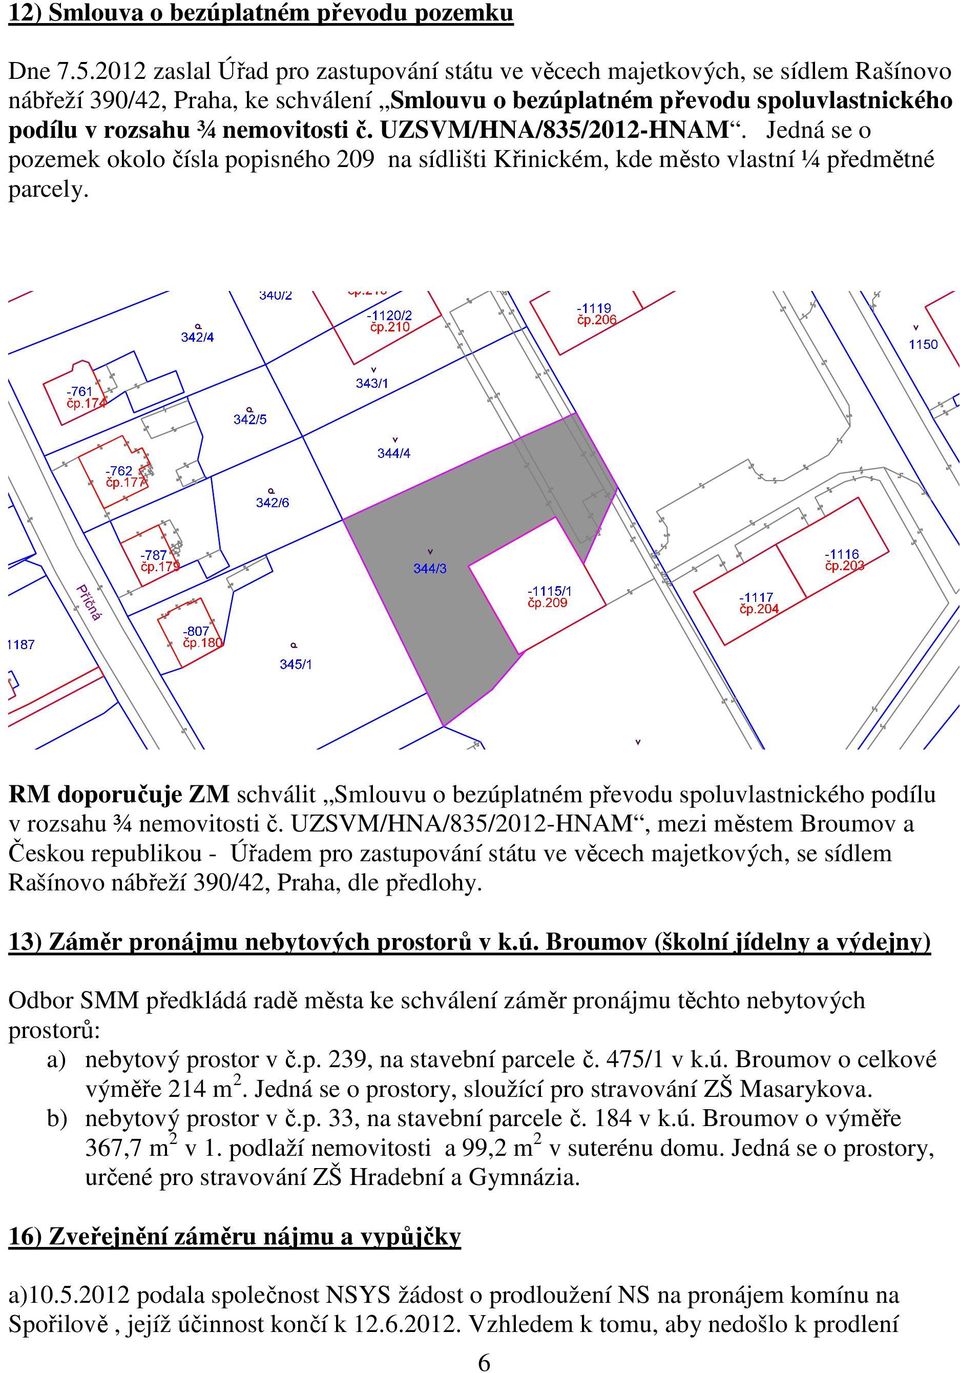 UZSVM/HNA/835/2012-HNAM. Jedná se o pozemek okolo čísla popisného 209 na sídlišti Křinickém, kde město vlastní ¼ předmětné parcely.